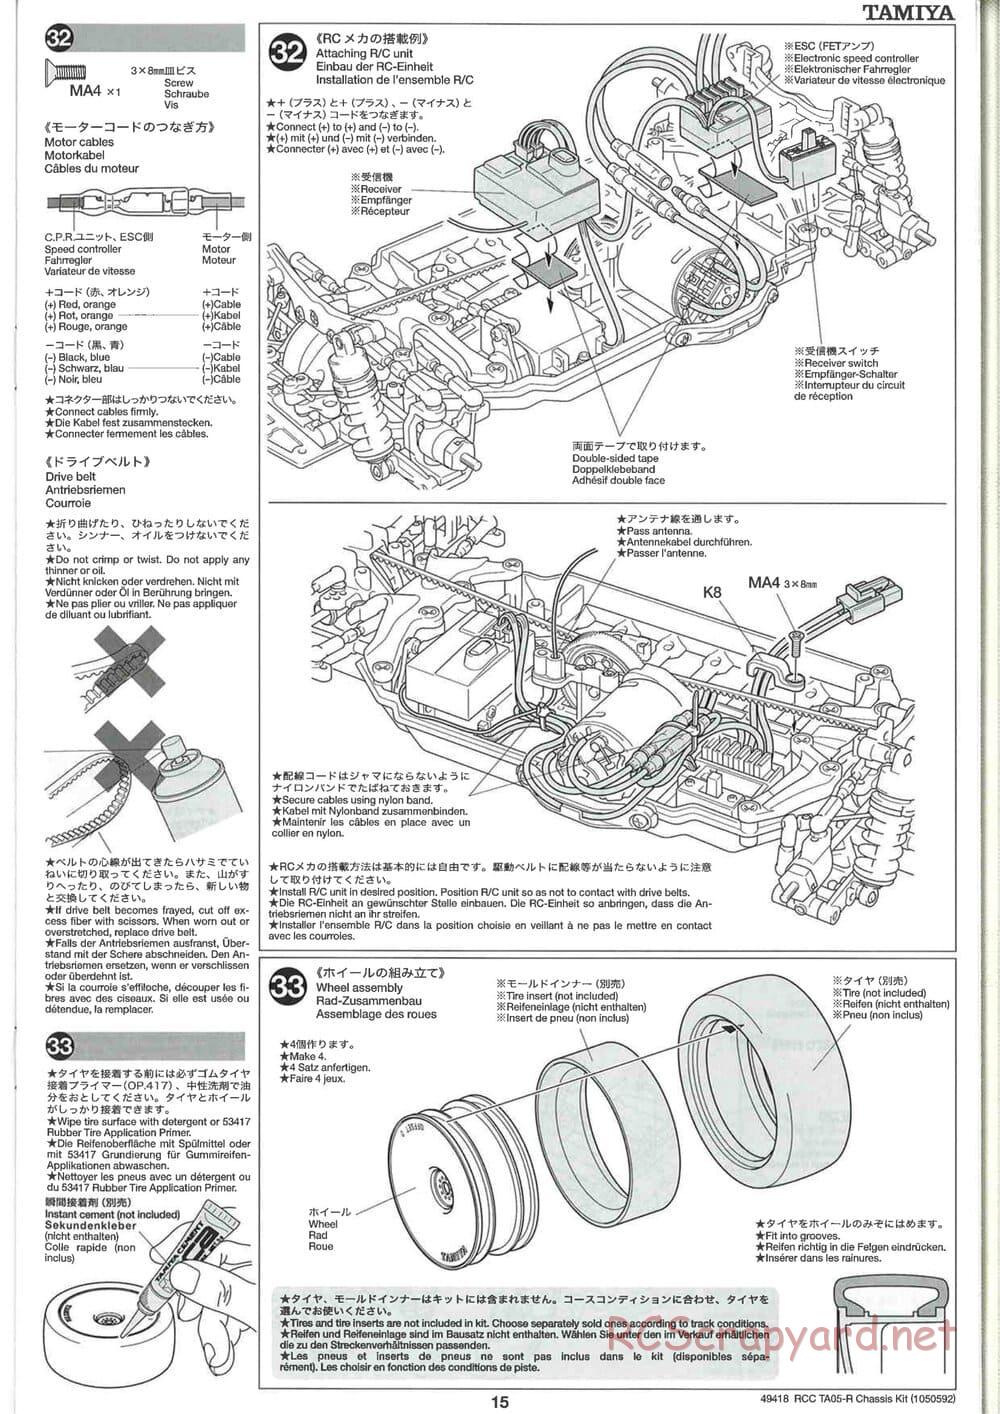 Tamiya - TA05-R Chassis - Manual - Page 15